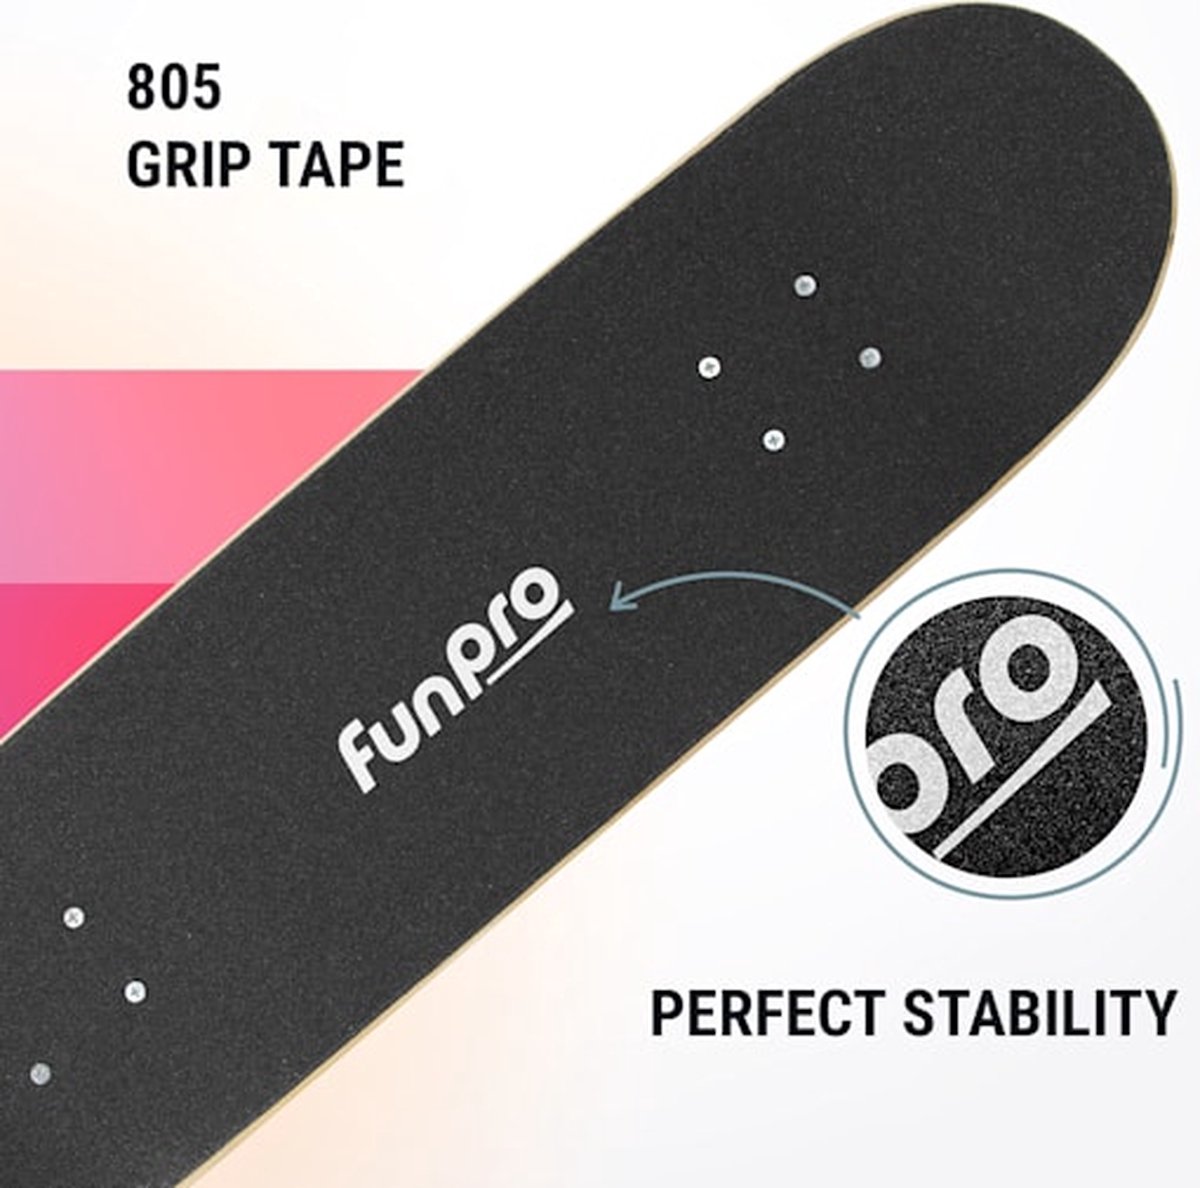 funpro Skate 21 skateboard klein - voor kinderen & tieners - 7-laags esdoornhout - Verkrijgbaar in 2 formaten